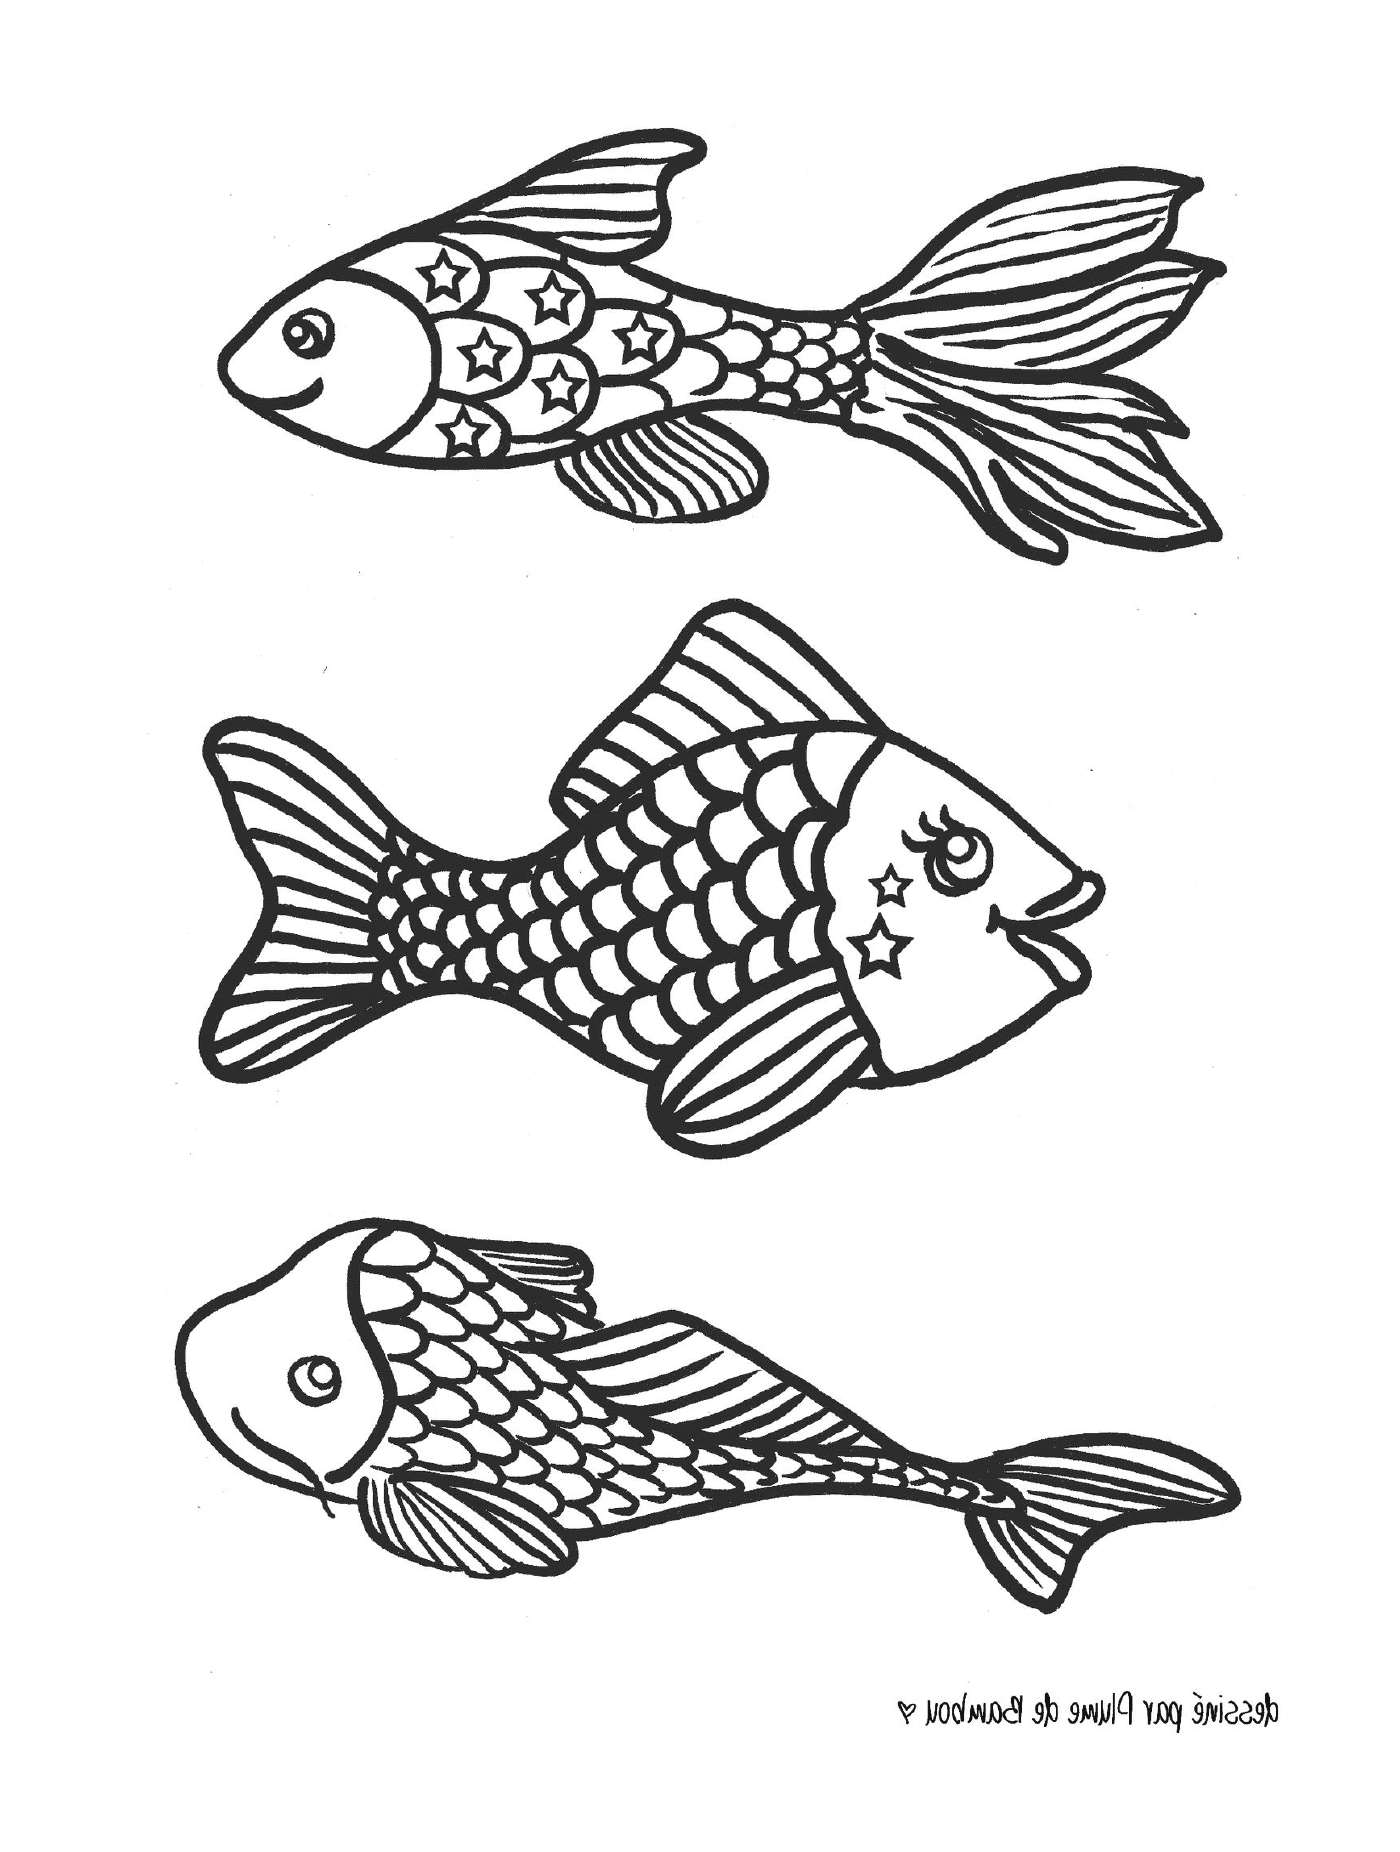  Drei schwarze und weiße Fische 